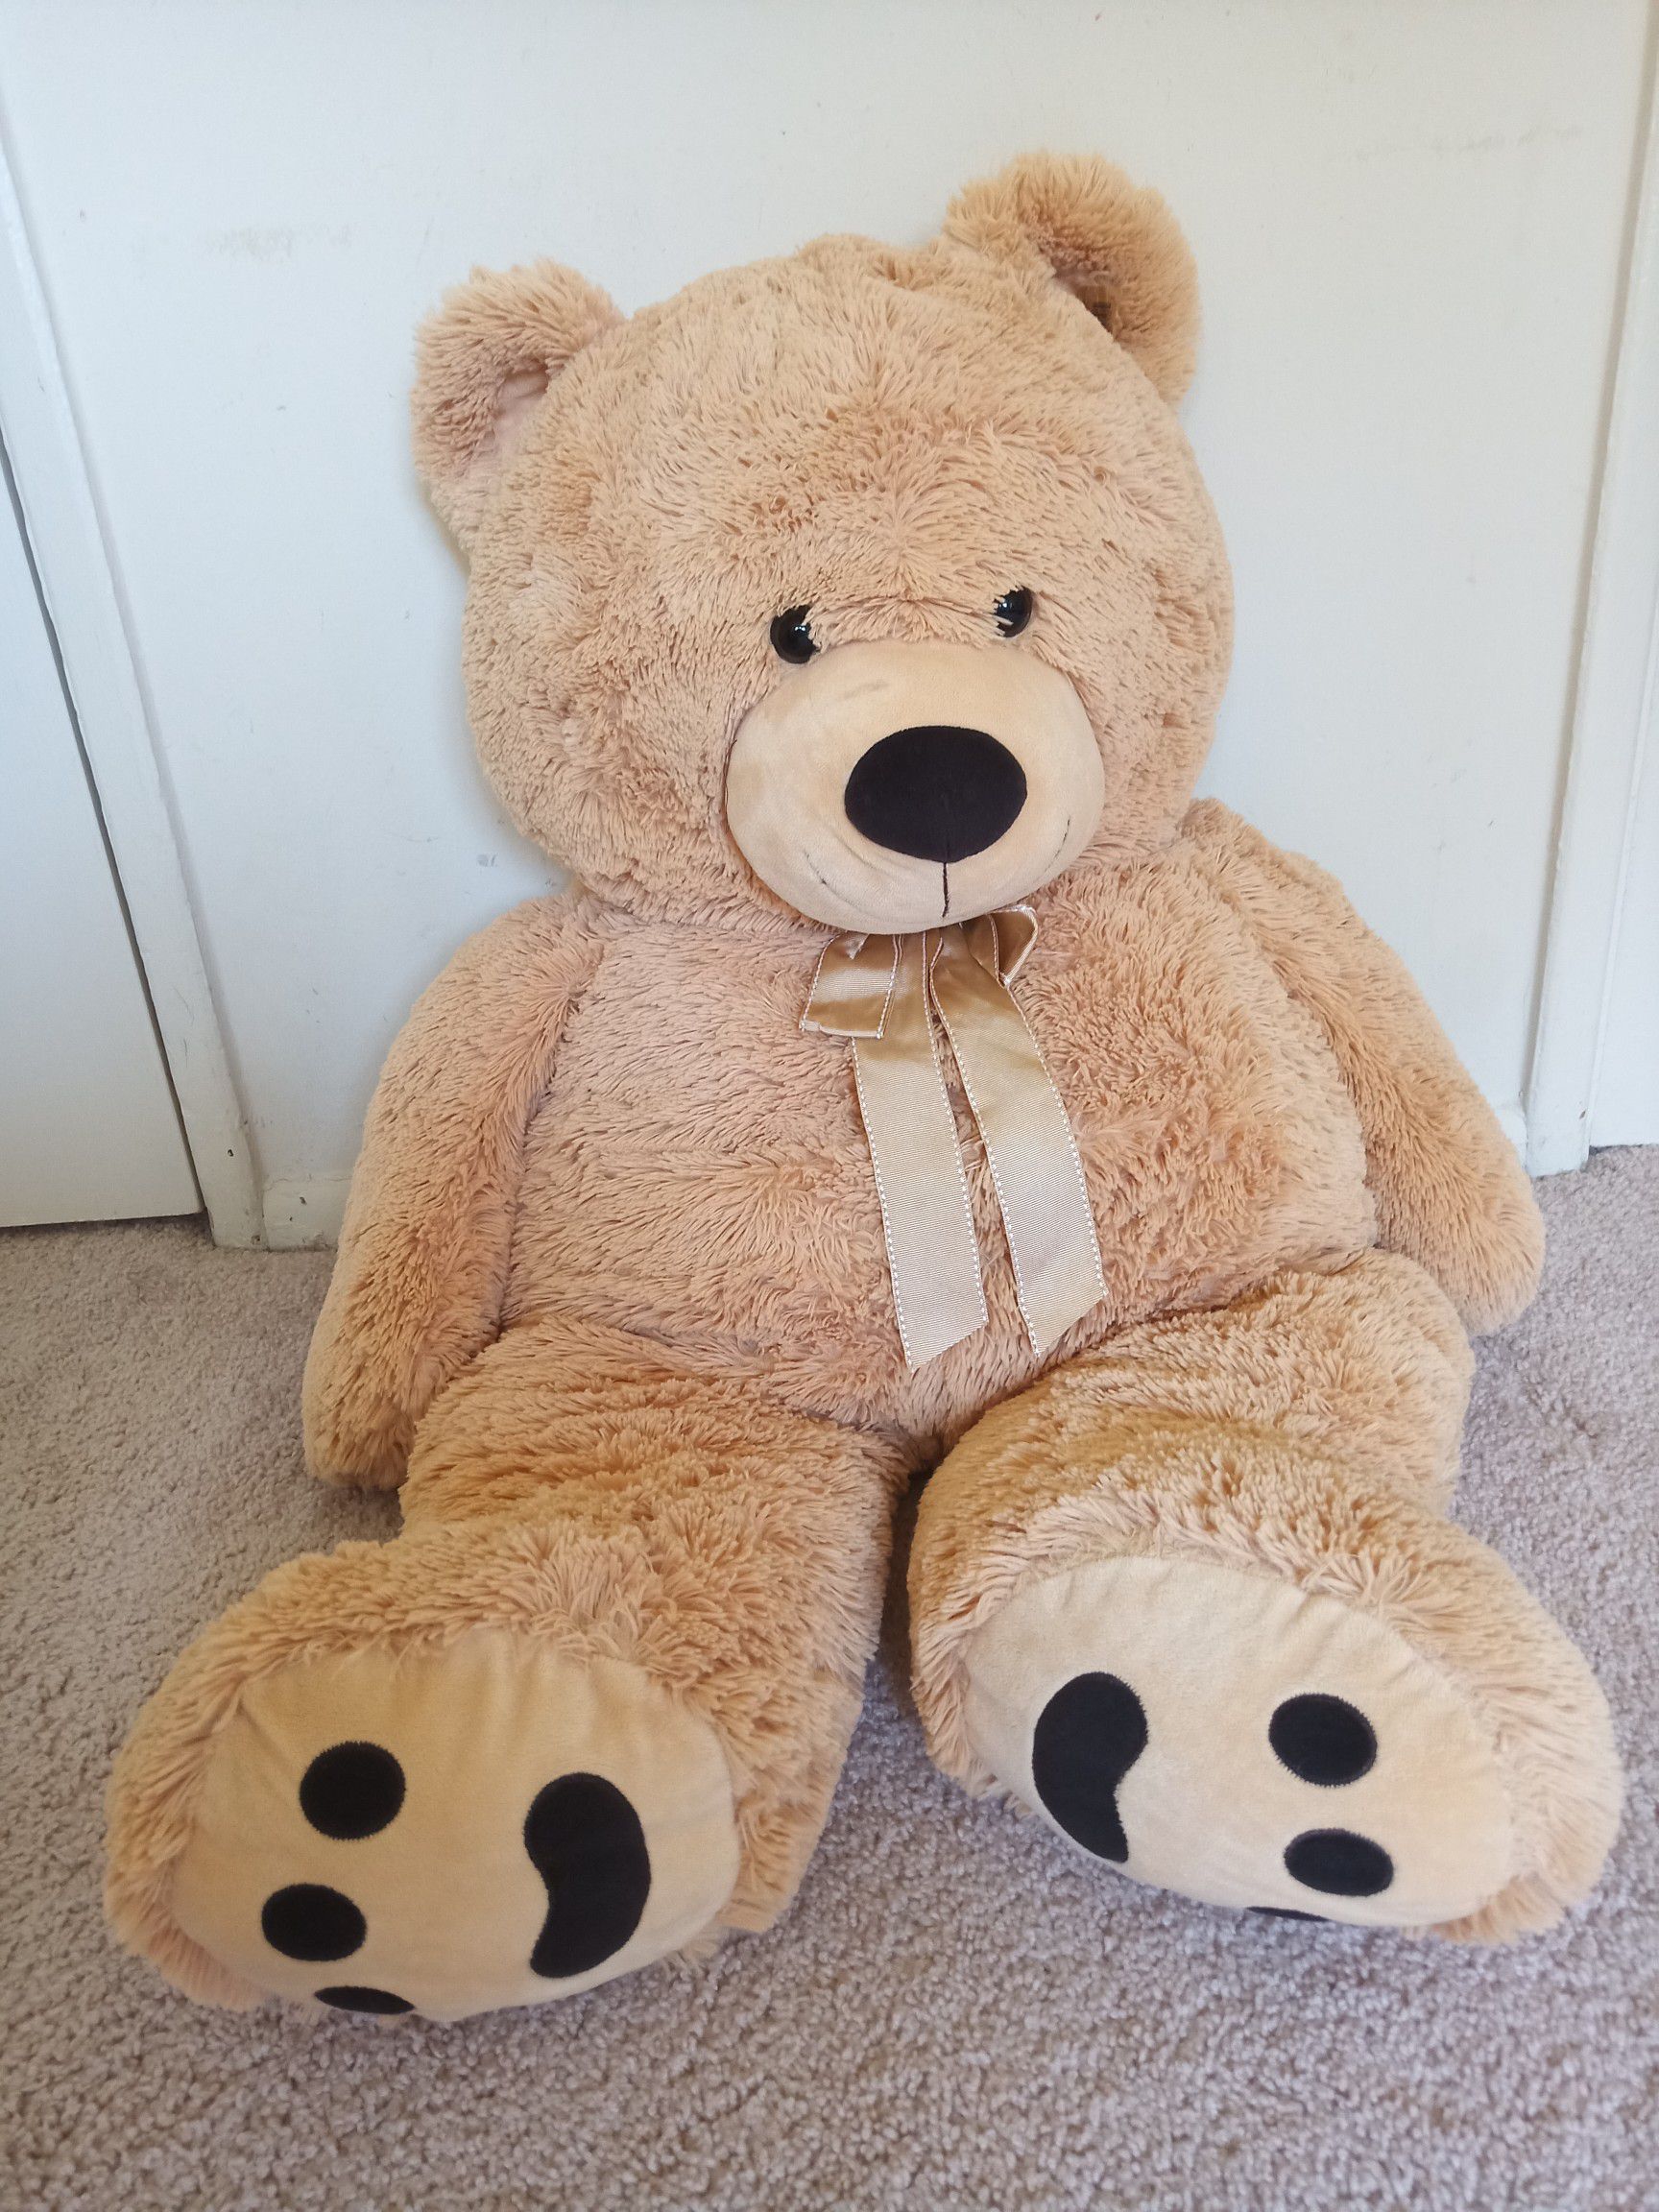 Big plush teddy bear ~35inches